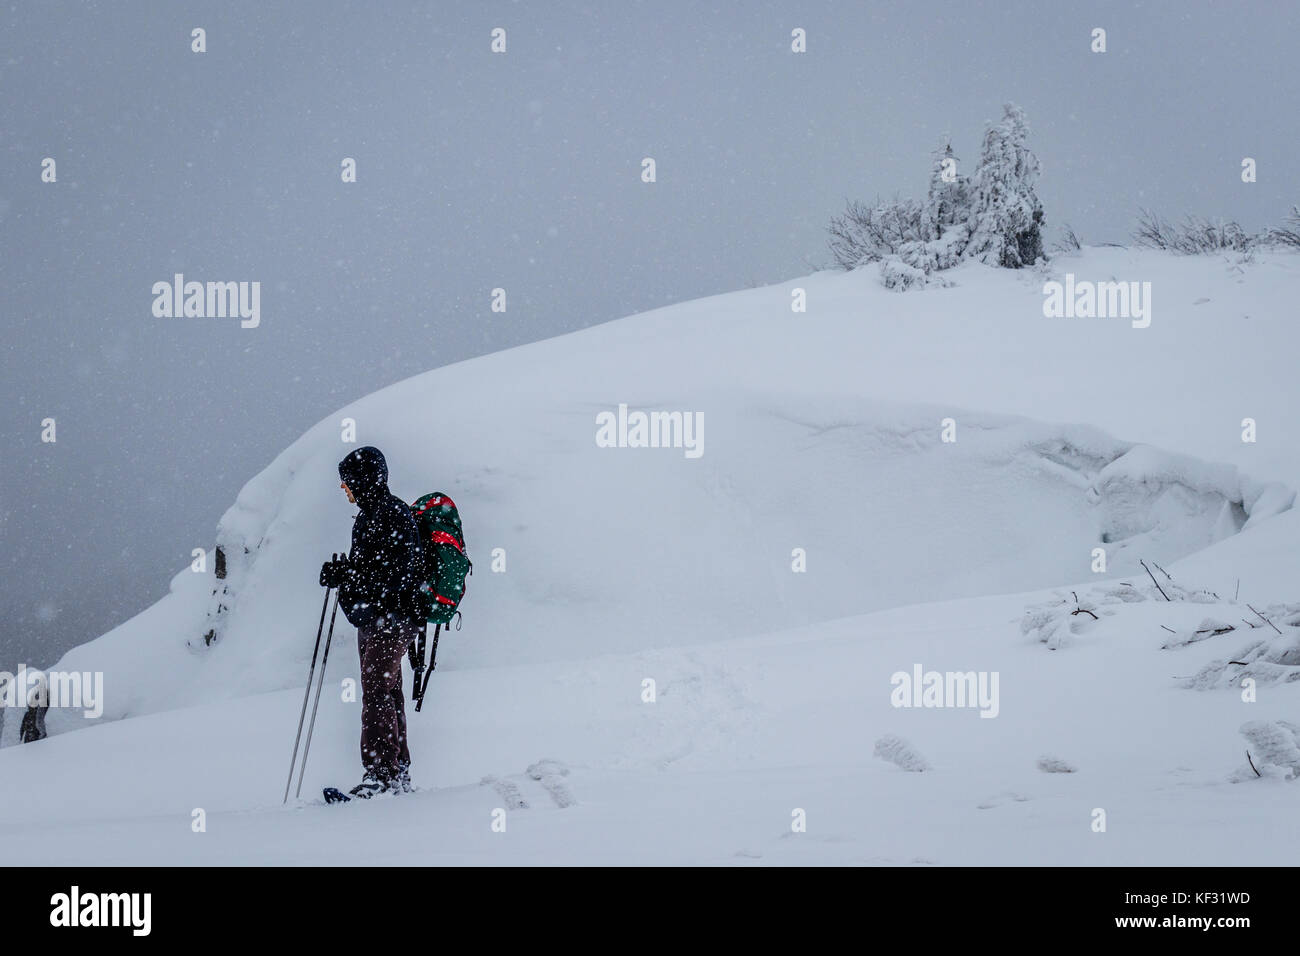 Un solitario escursionista con racchette da neve sfidando una tempesta di neve vicino a una scogliera in 'reprenotazione tanet naturale gazon' durante una giornata invernale nei VOSGI, FRANCIA Foto Stock